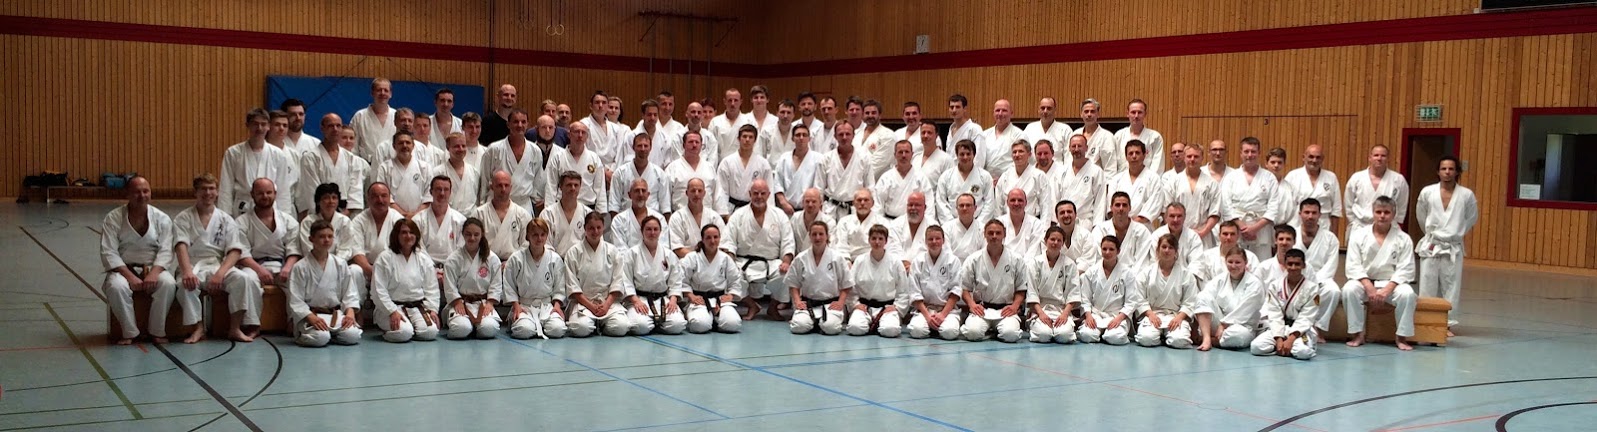 Gruppenfoto aller Teilnehmer eines Karate Seminars in Dresden.